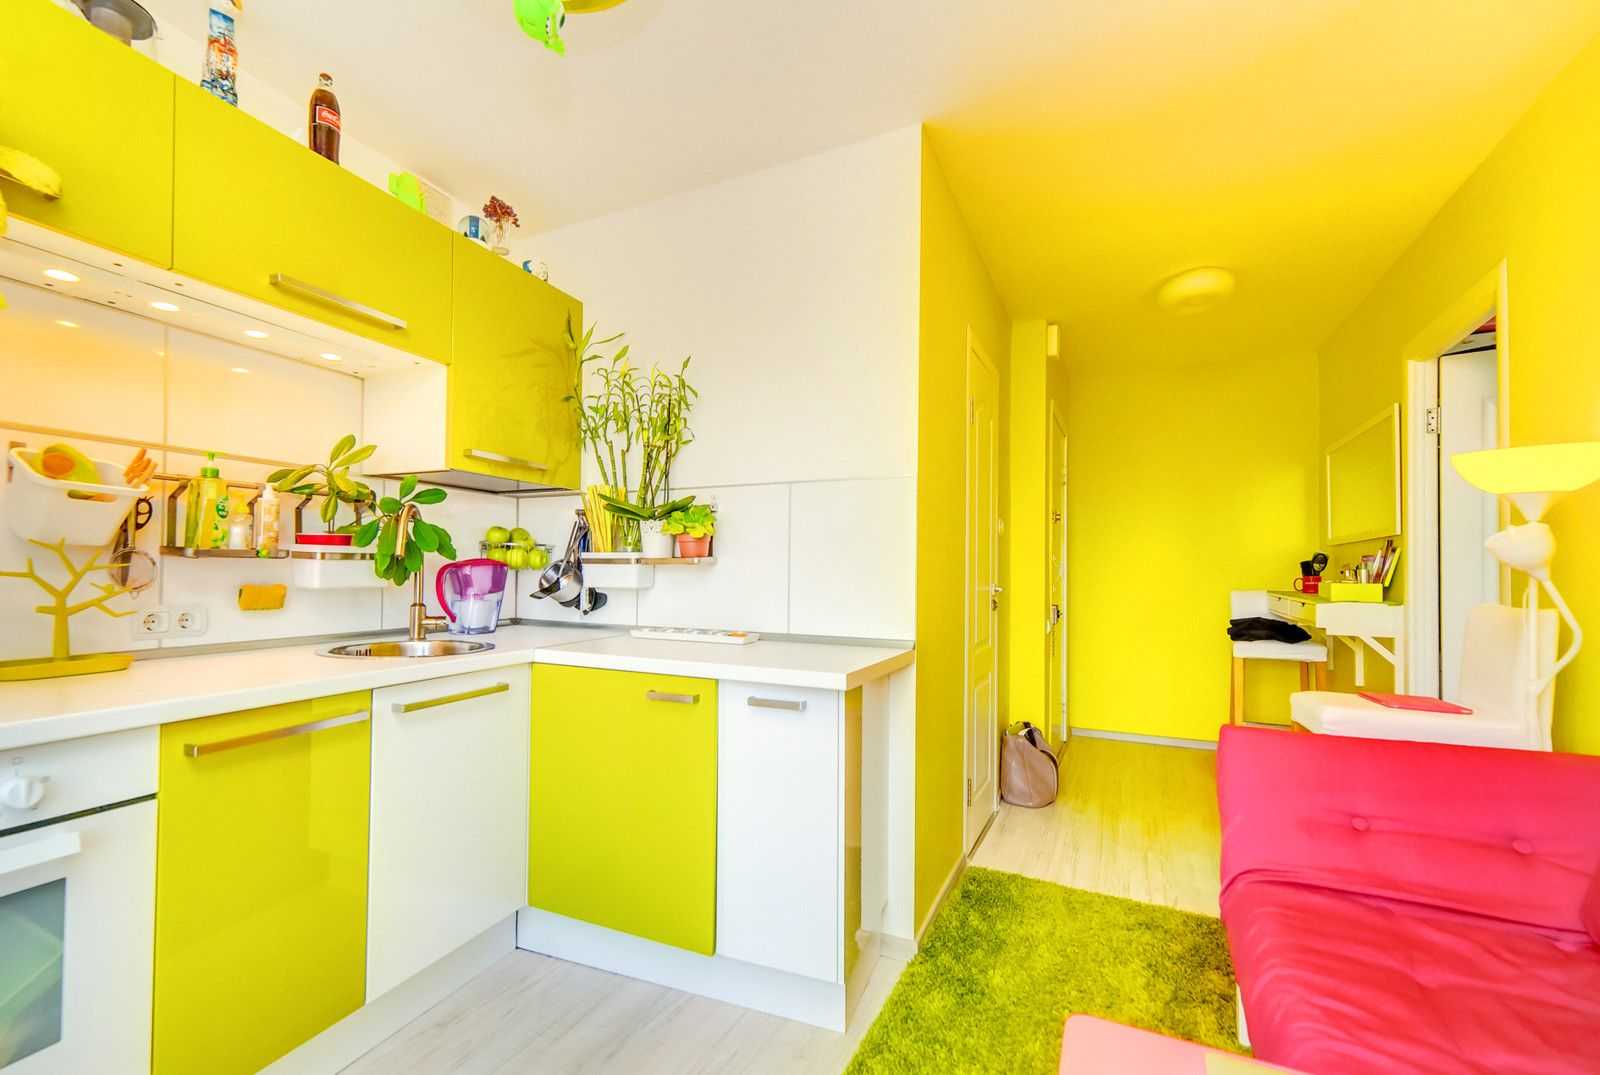 Кухня желтого цвета в интерьере